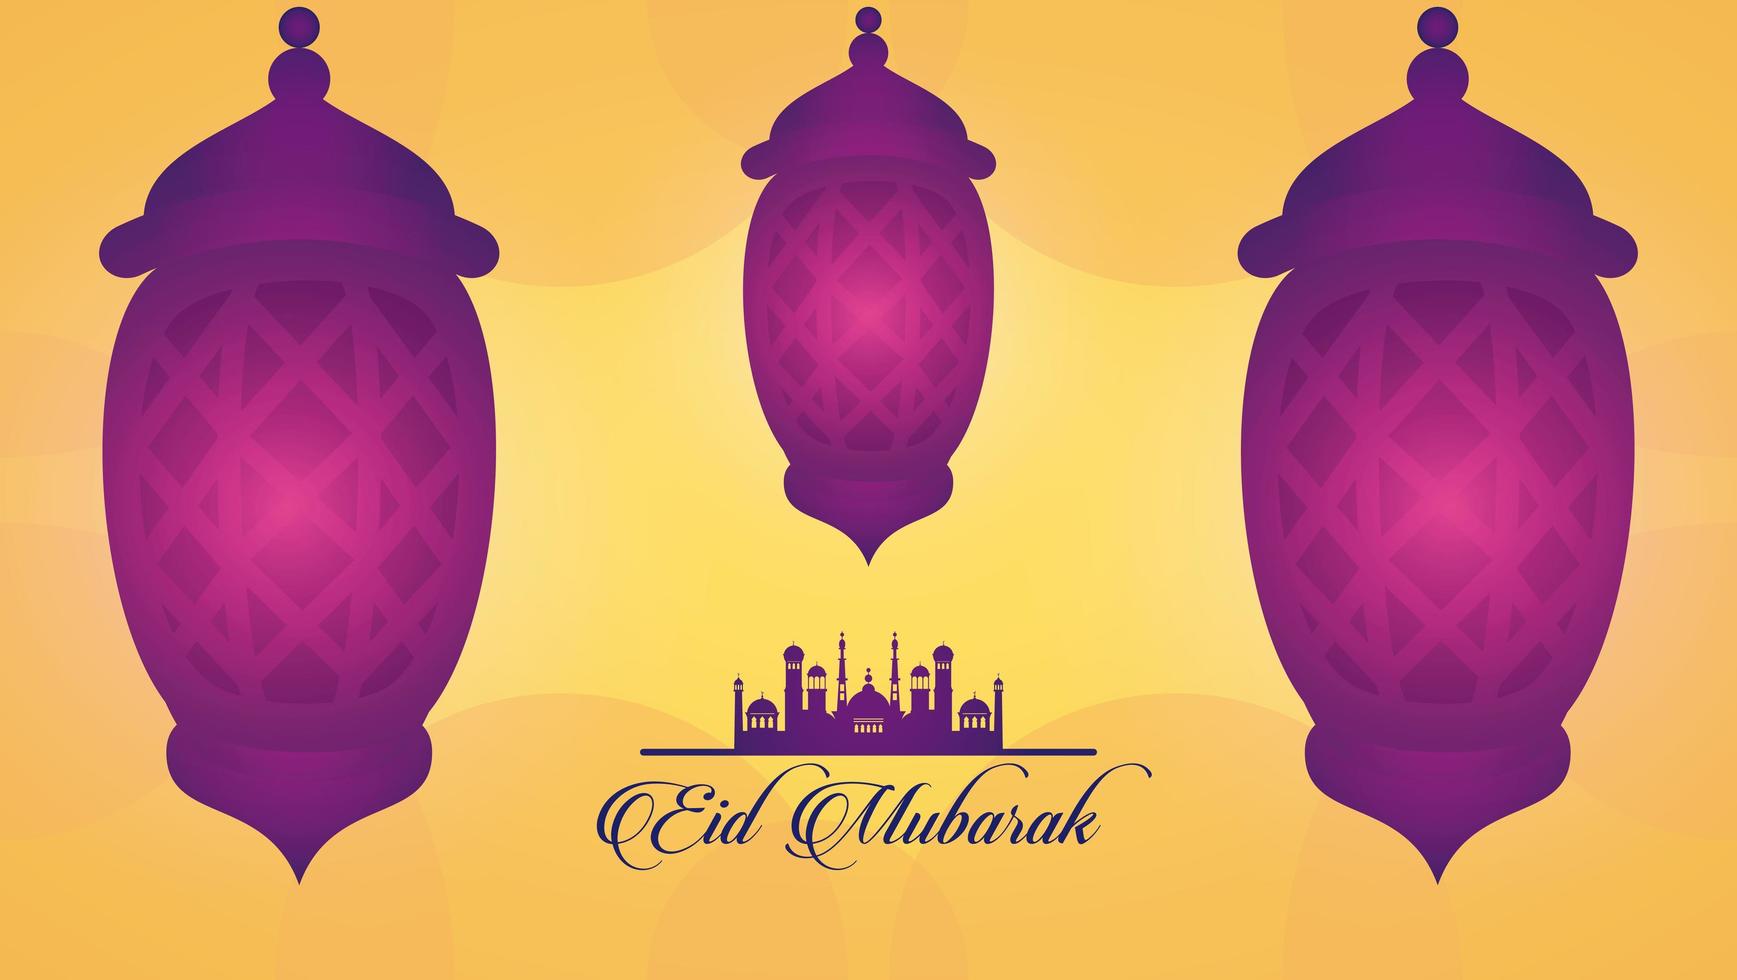 biglietto celebrativo eid mubarak con lanterne appese vettore